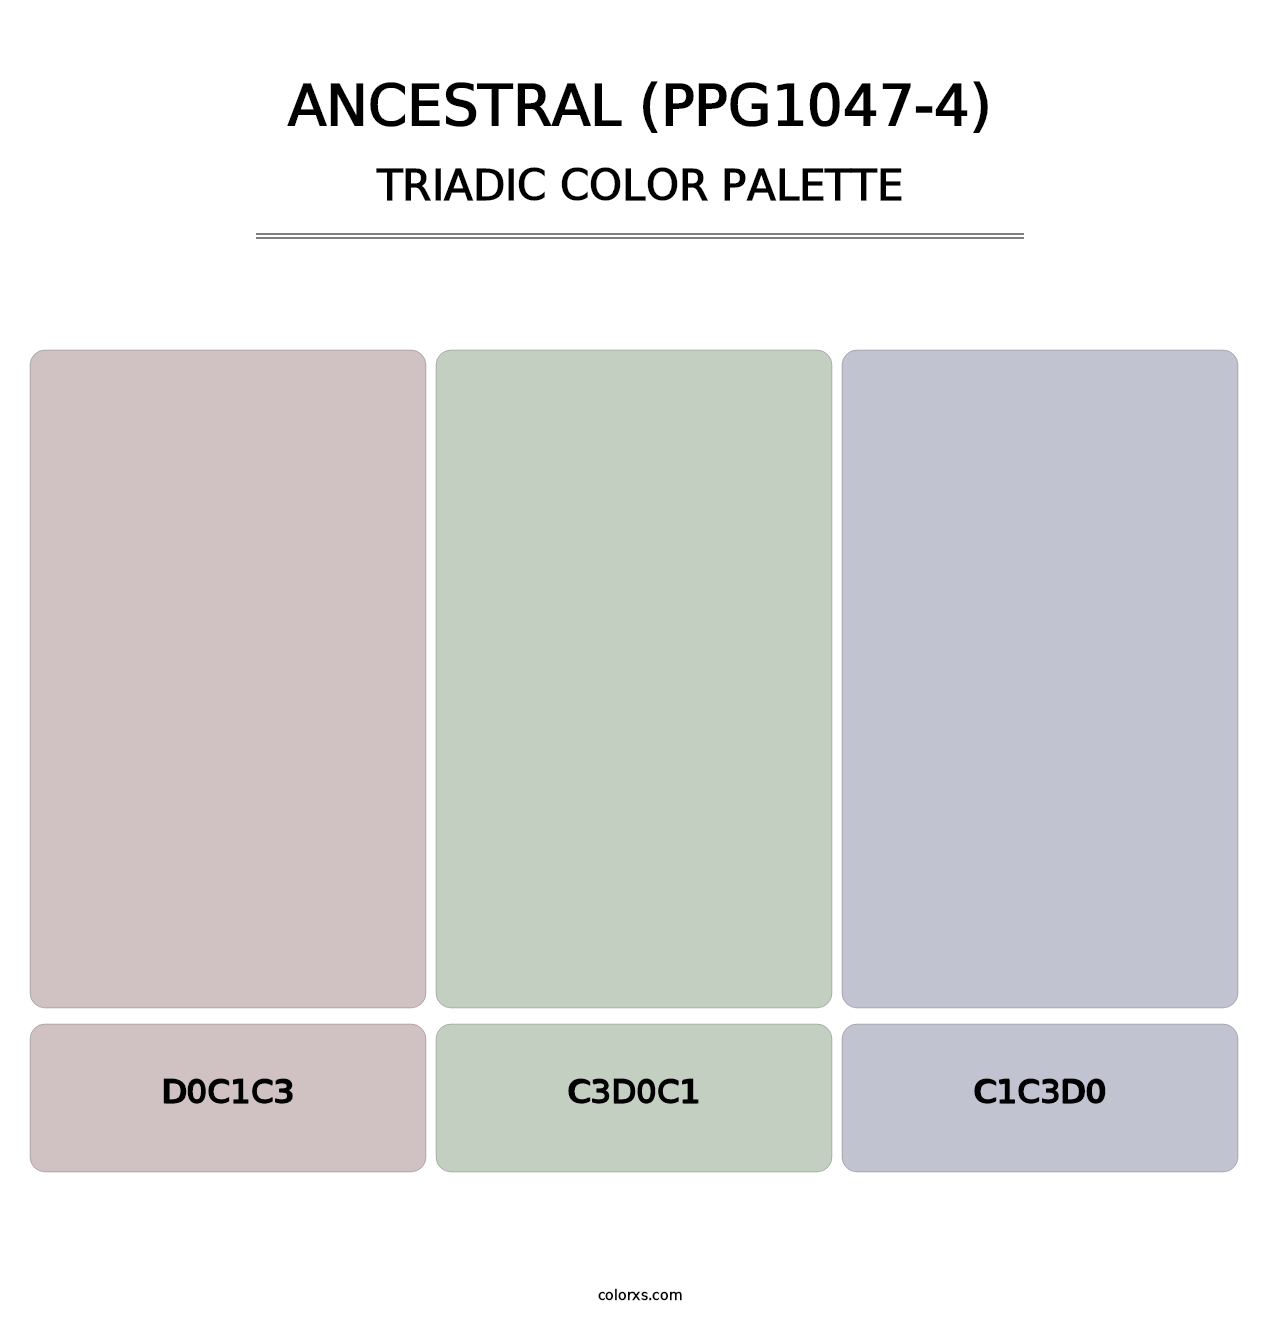 Ancestral (PPG1047-4) - Triadic Color Palette